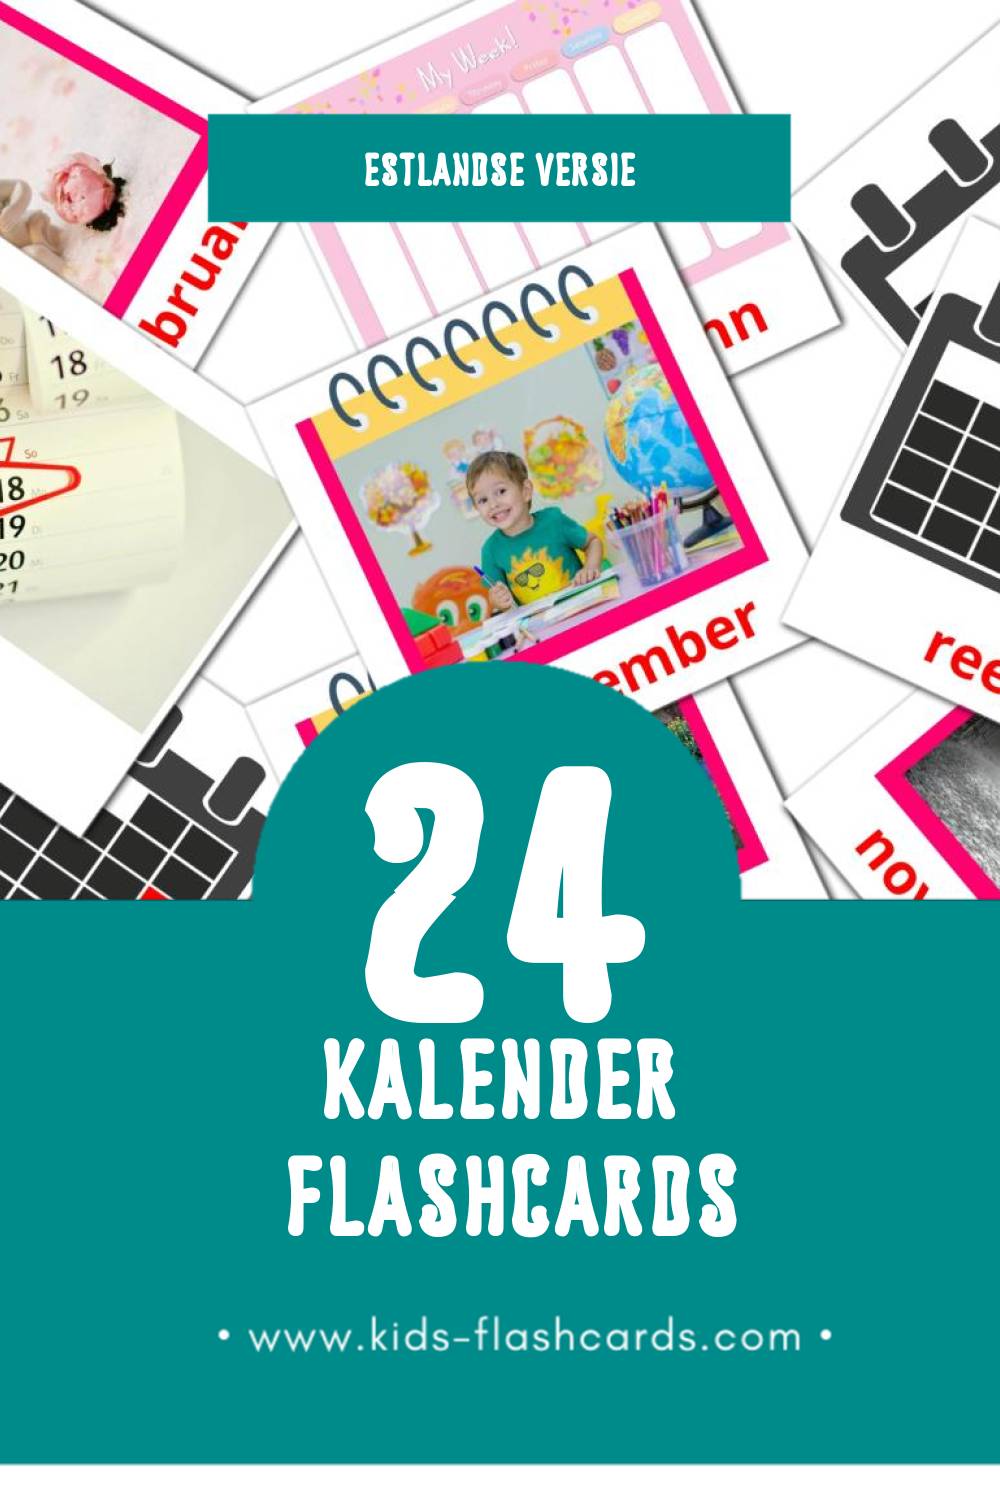 Visuele Kalender Flashcards voor Kleuters (24 kaarten in het Estlands)